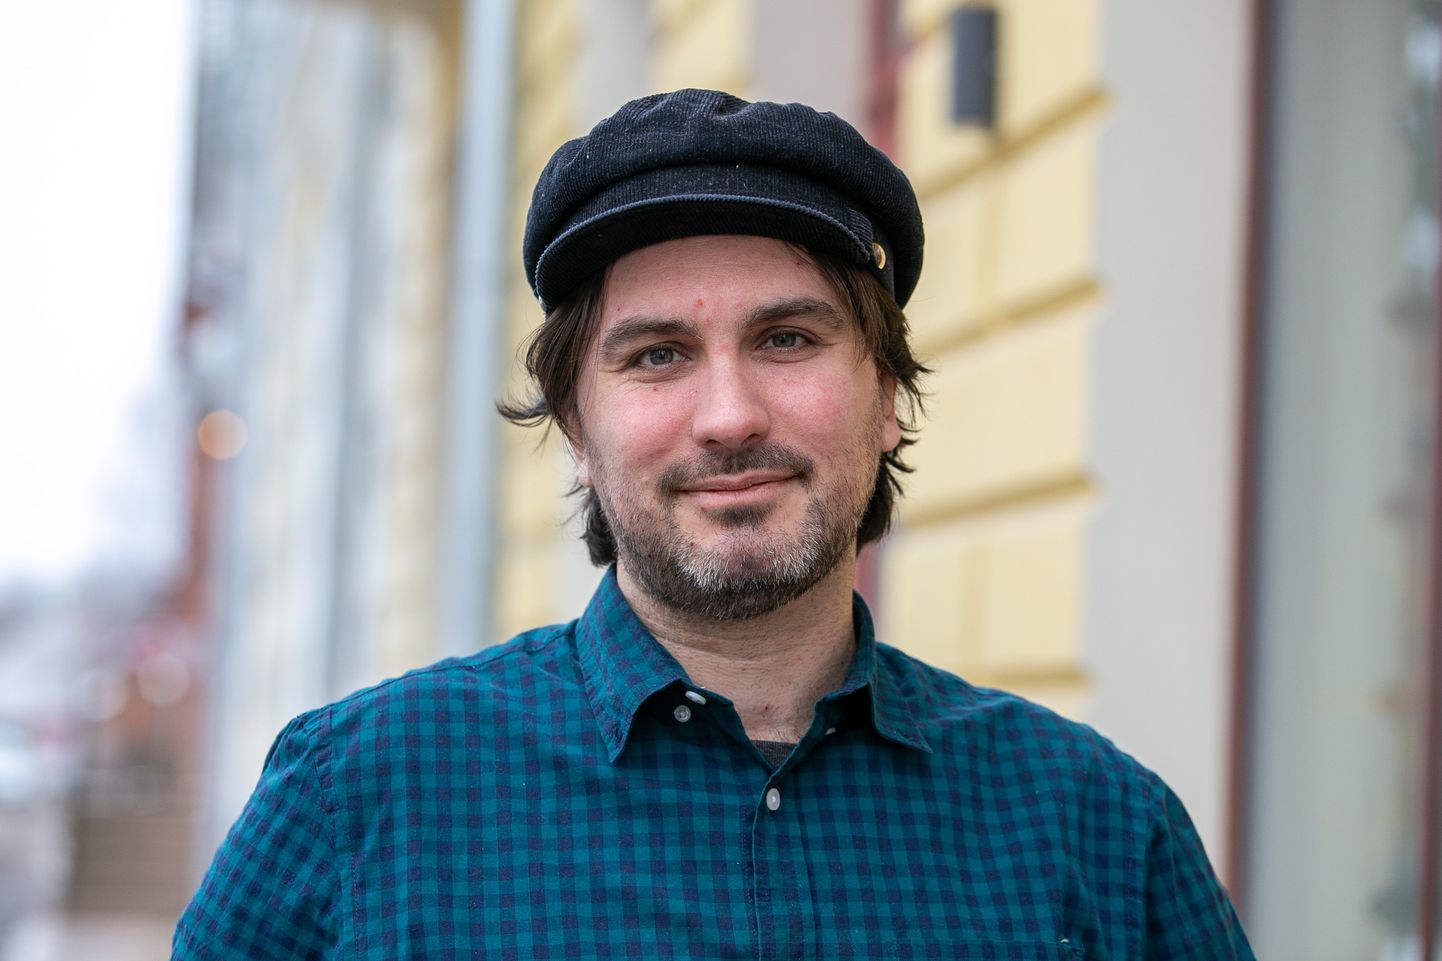 Justin Carroll Petrone, Ameerika-Eesti ajakirjanik, kirjanik, blogija ja muusik.